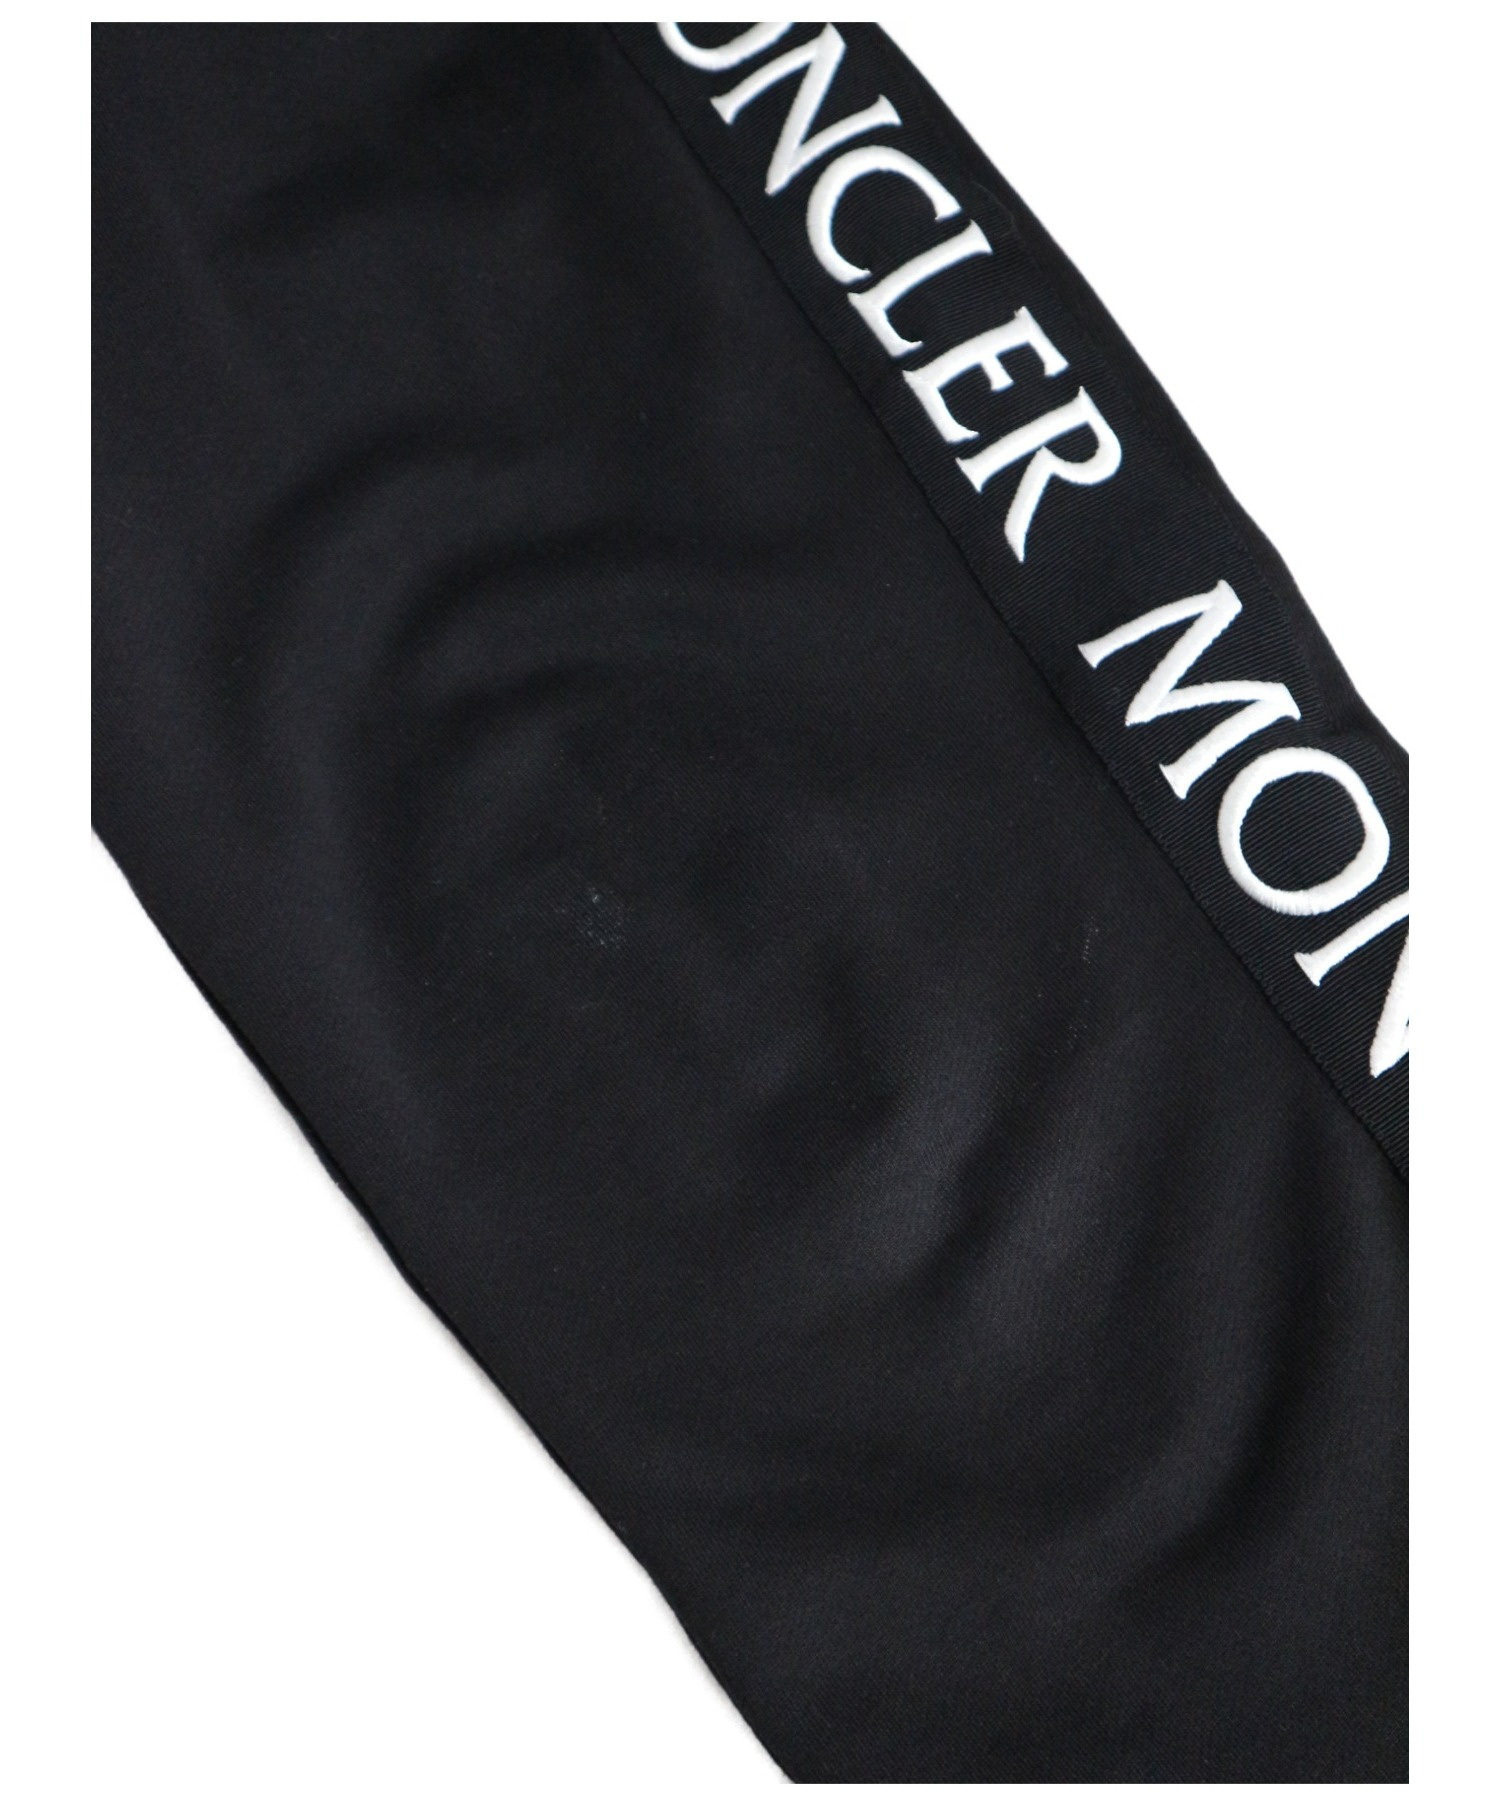 MONCLER (モンクレール) ロゴラインスウェットパンツ ブラック サイズ 